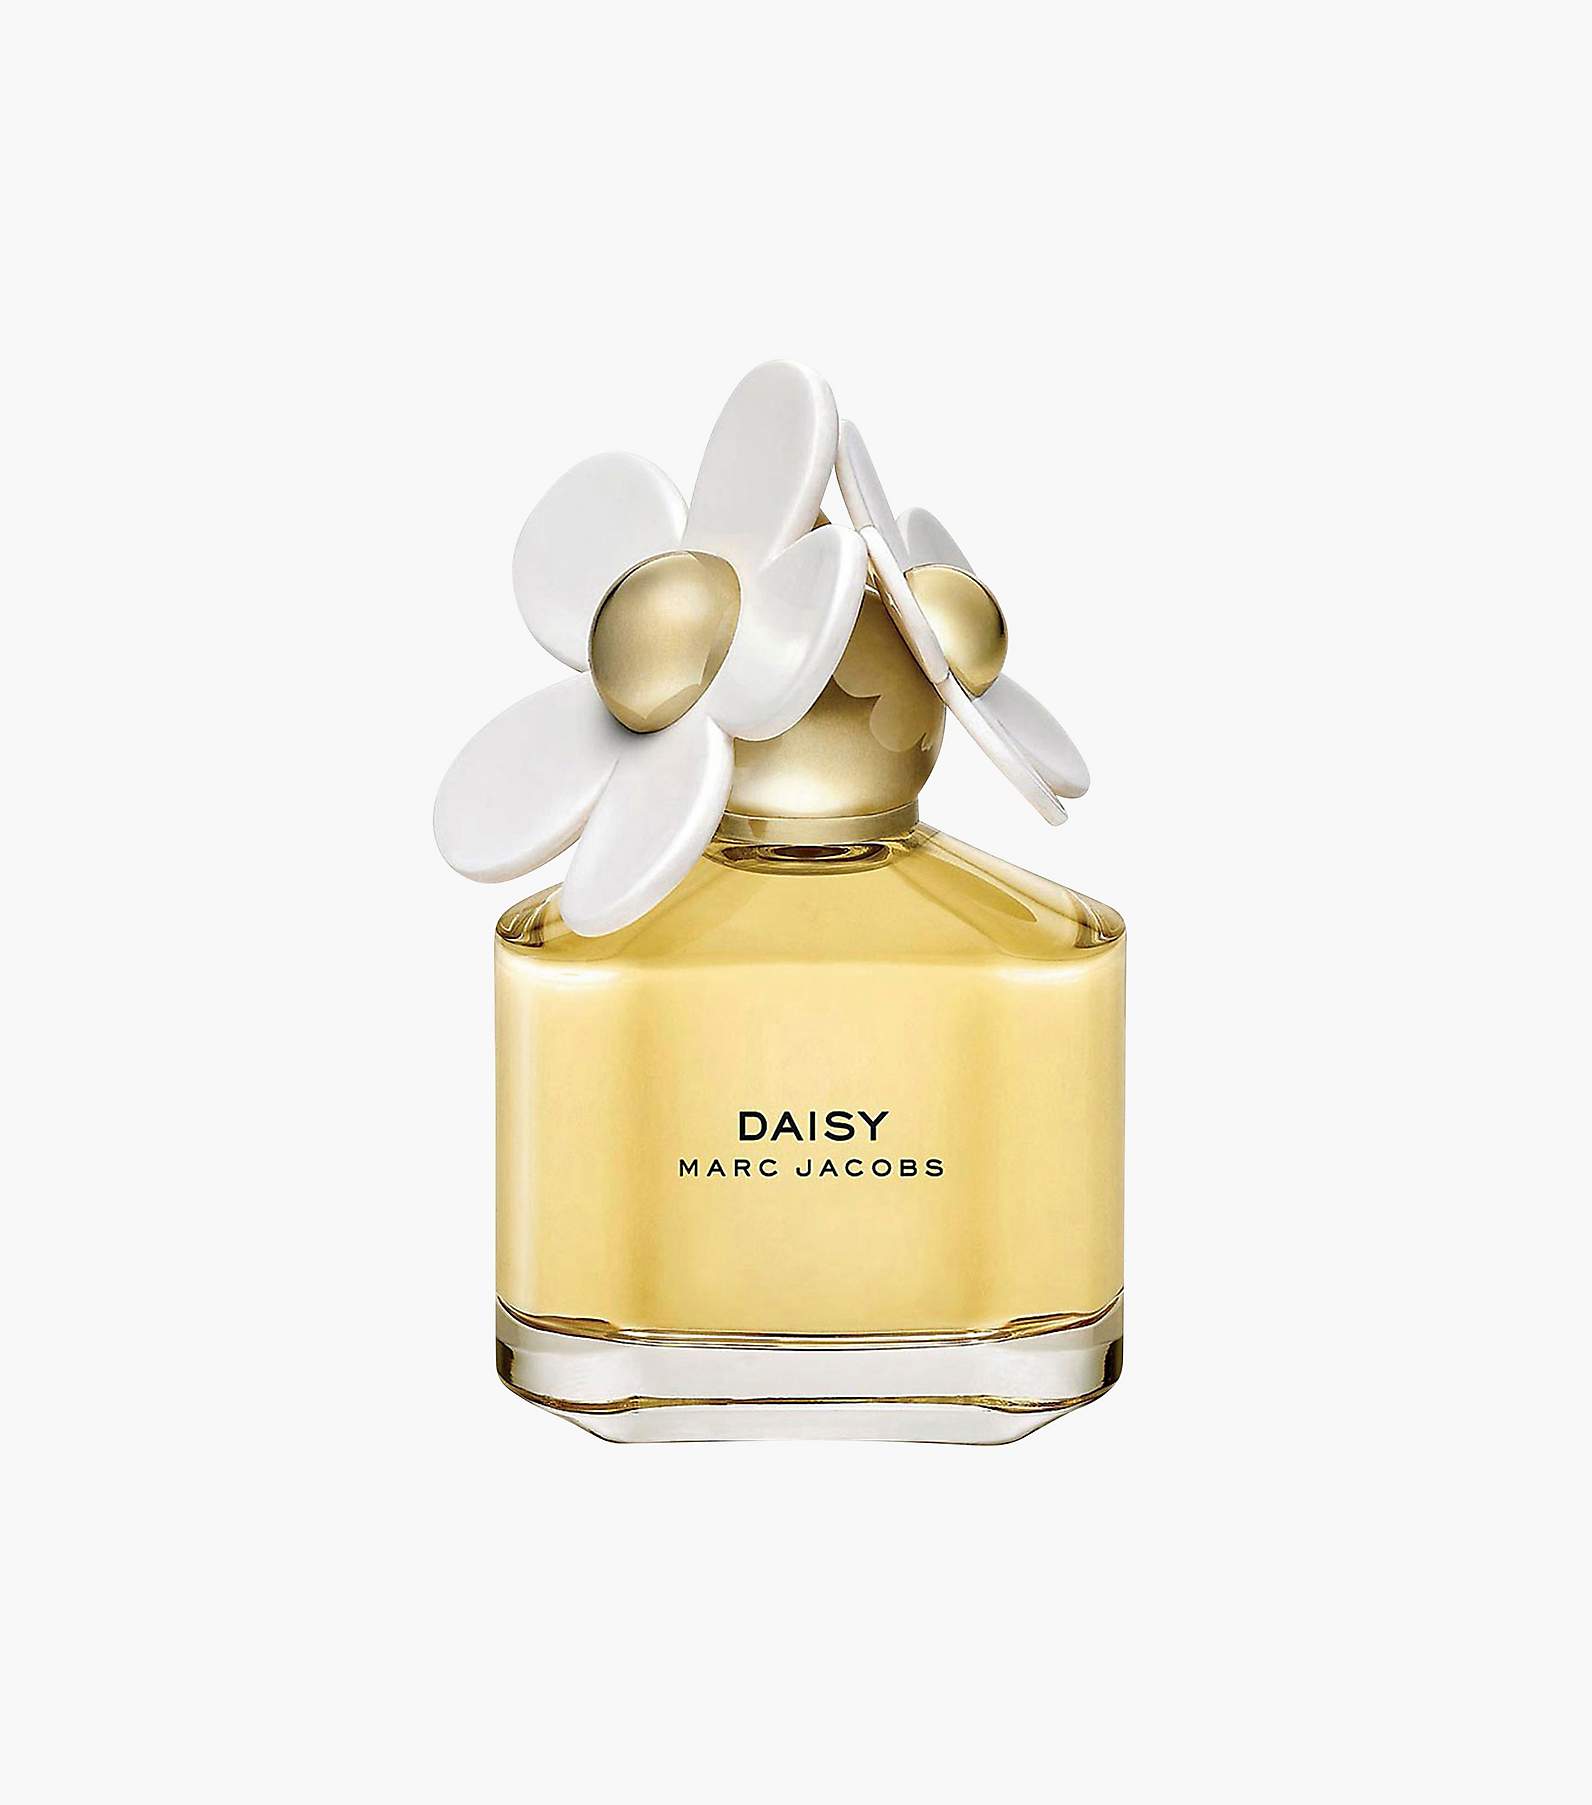 Daisy Eau de Toilette Perfume 3.4 oz